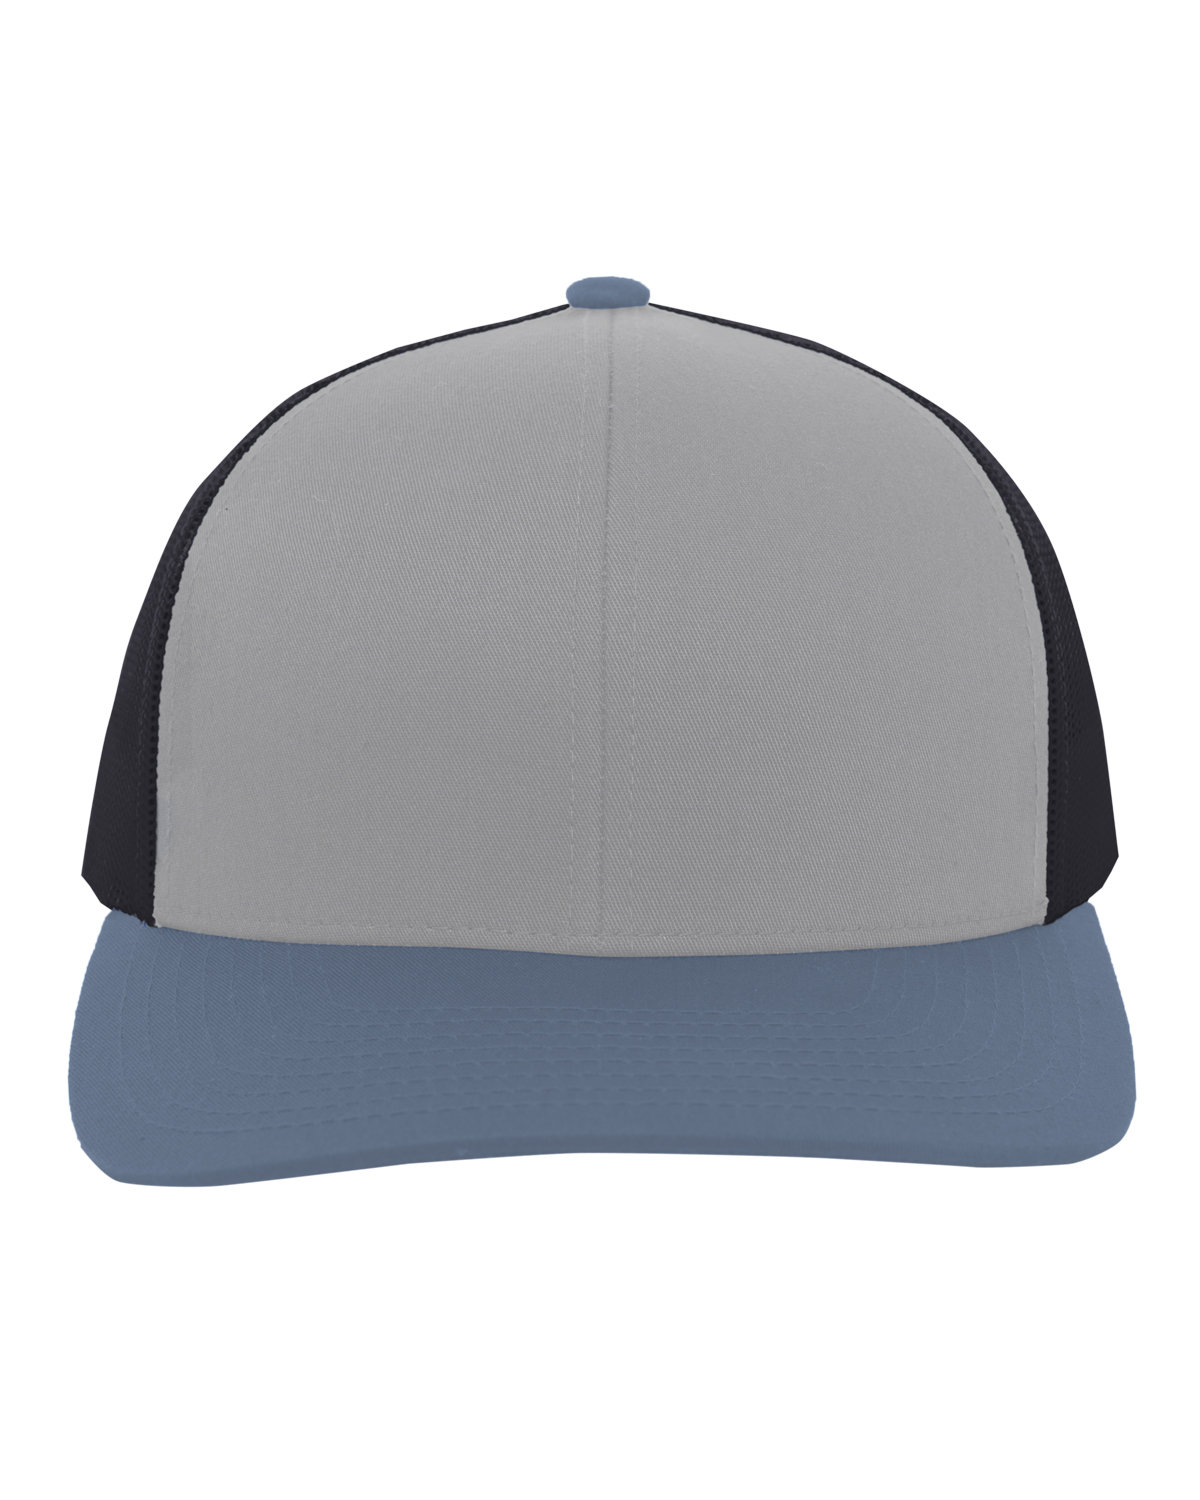 Pacific Headwear Trucker Snapback Hat HT GR/ LT CH/ OB 